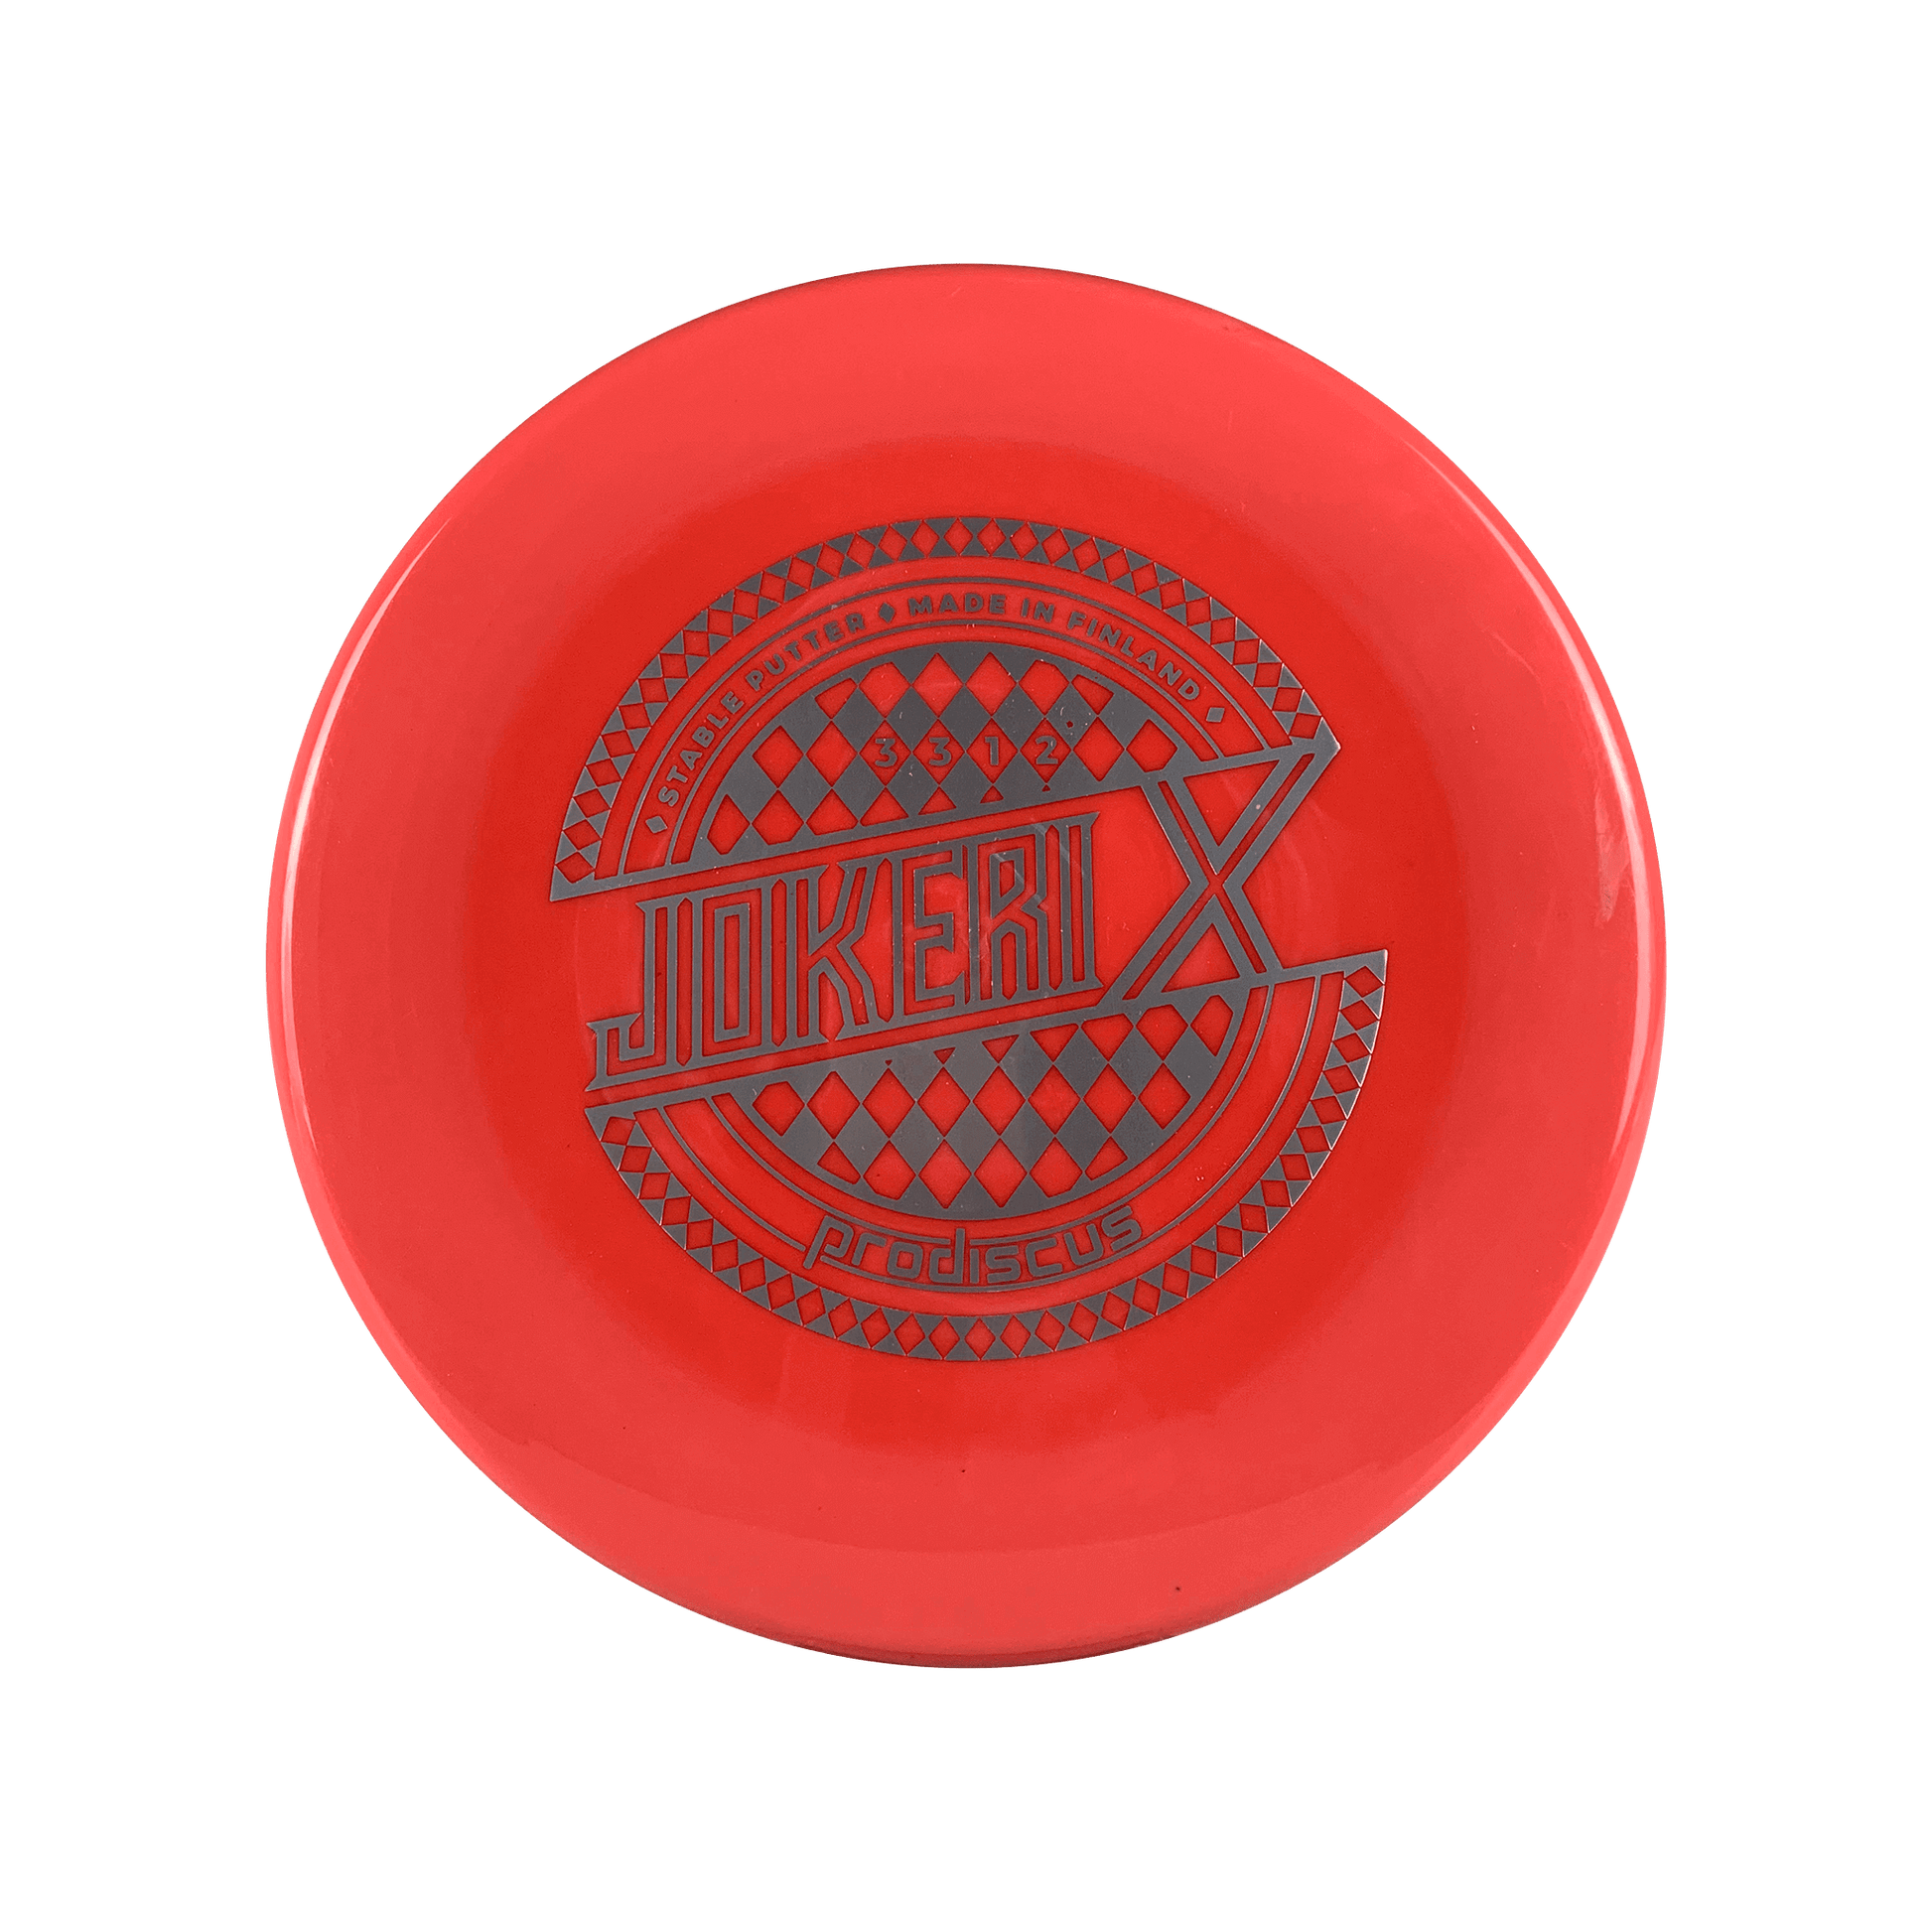 Ultrium Jokeri X Disc Prodiscus red 175 